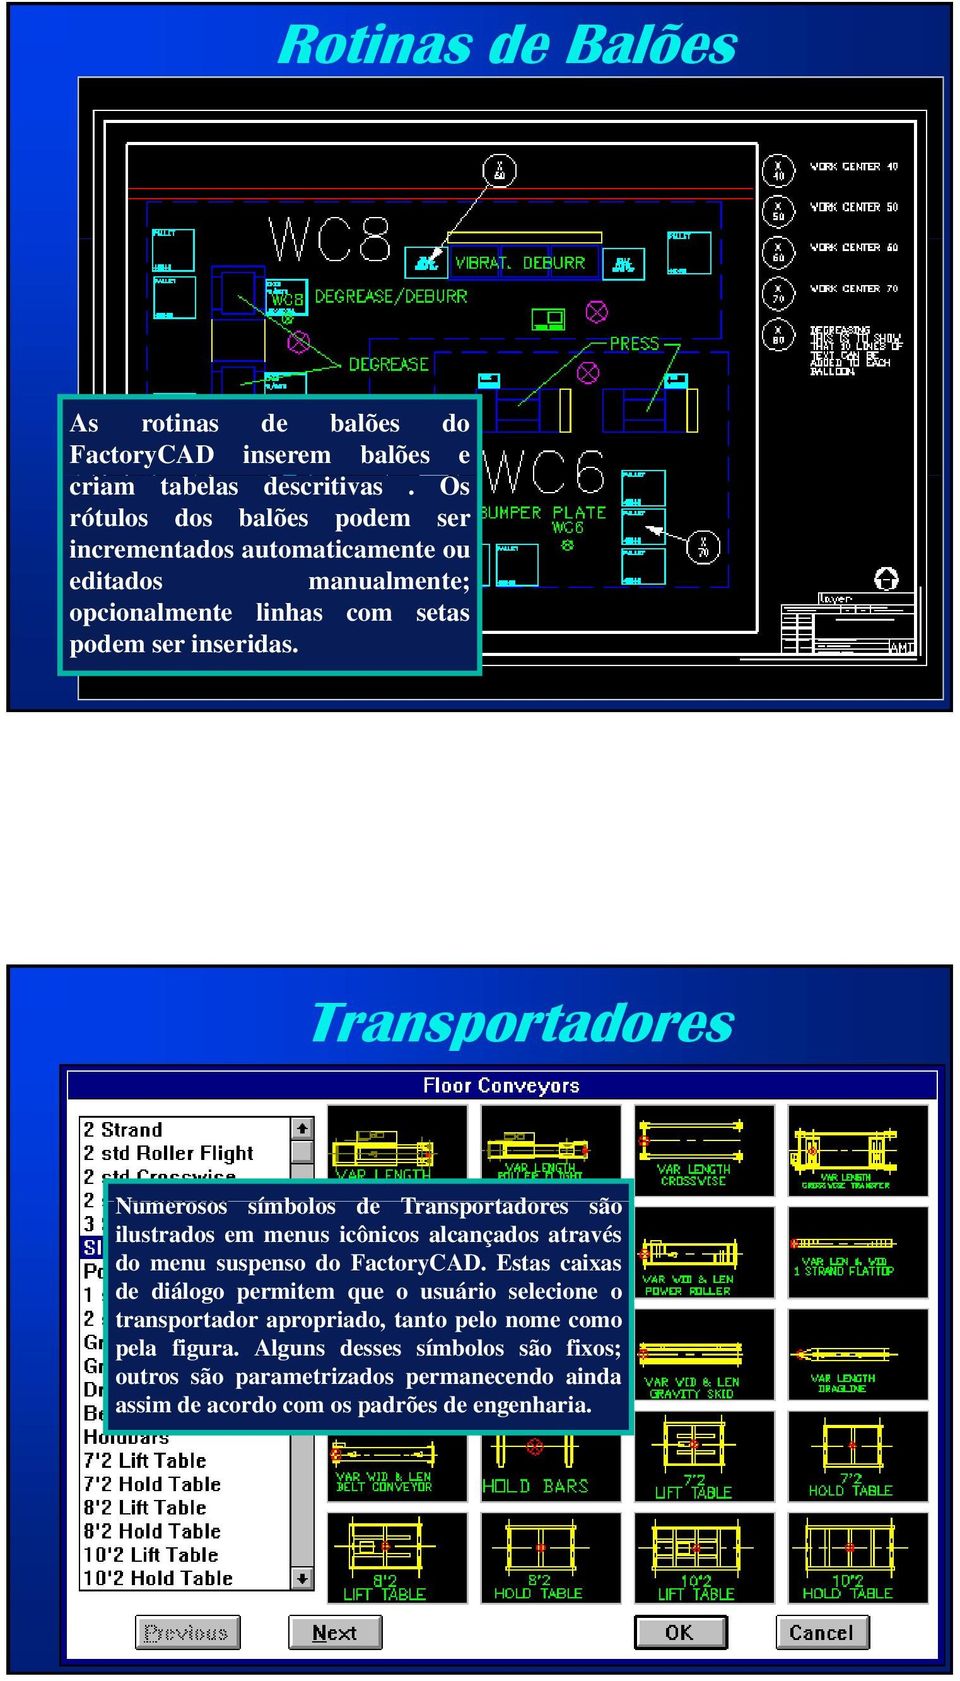 Transportadores N í b l d T t d ã Numerosos símbolos de Transportadores são ilustrados em menus icônicos alcançados através do menu suspenso do FactoryCAD.